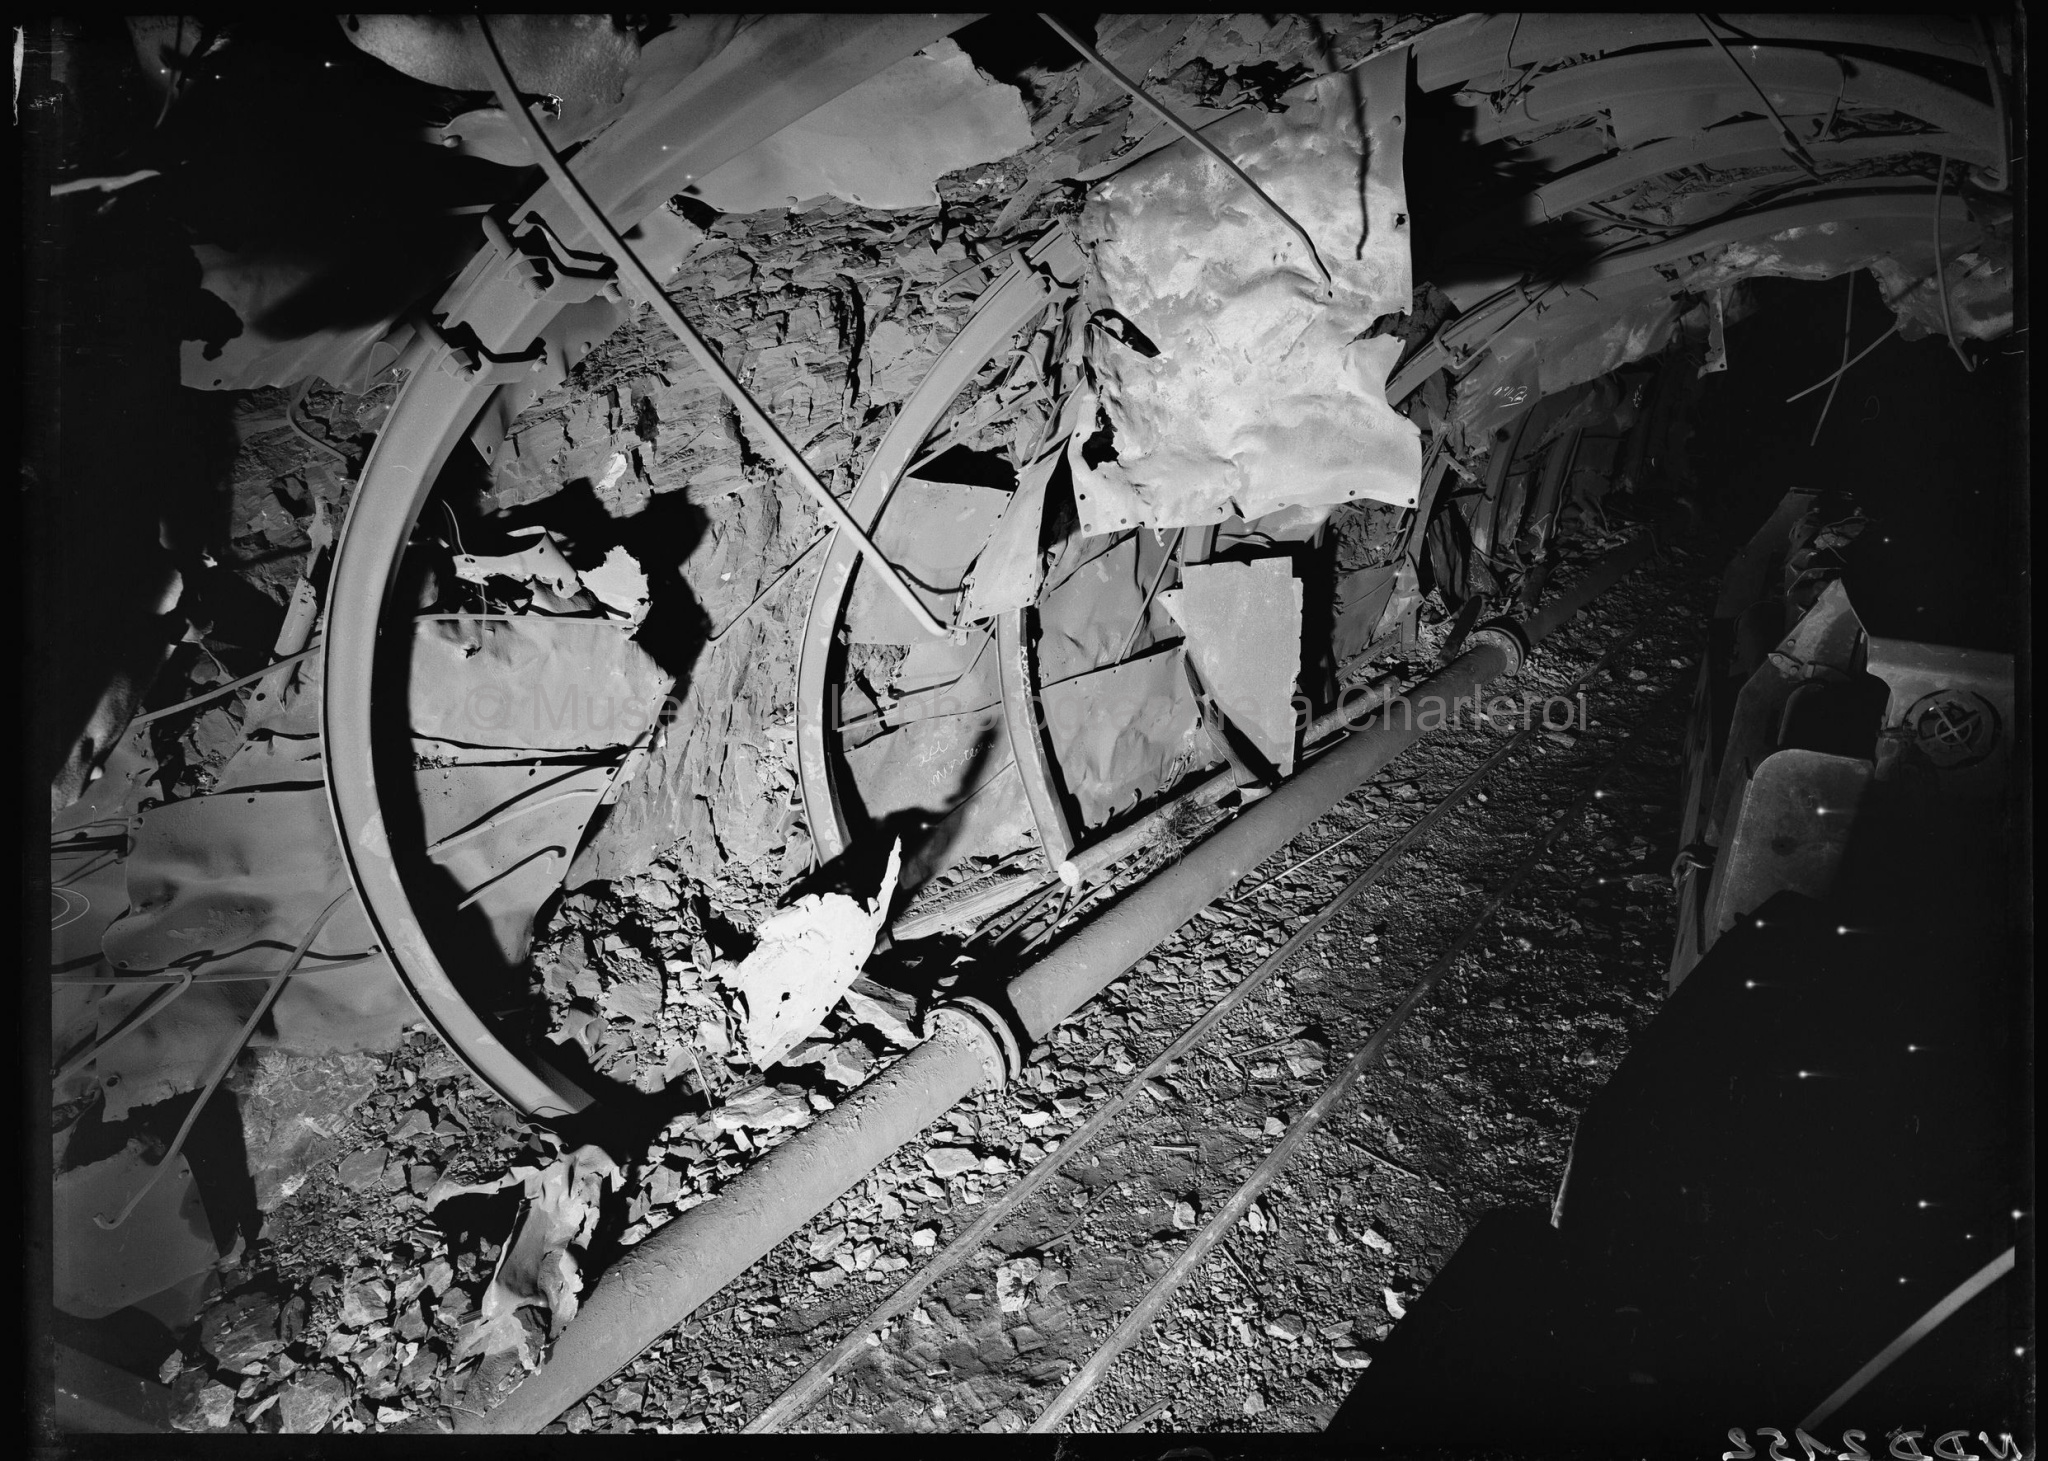 Coup de grisou dû au mauvais fonctionnement d'une locomotive (10 victimes) dégâts occasionnés au revêtement de la galerie par l'explosion